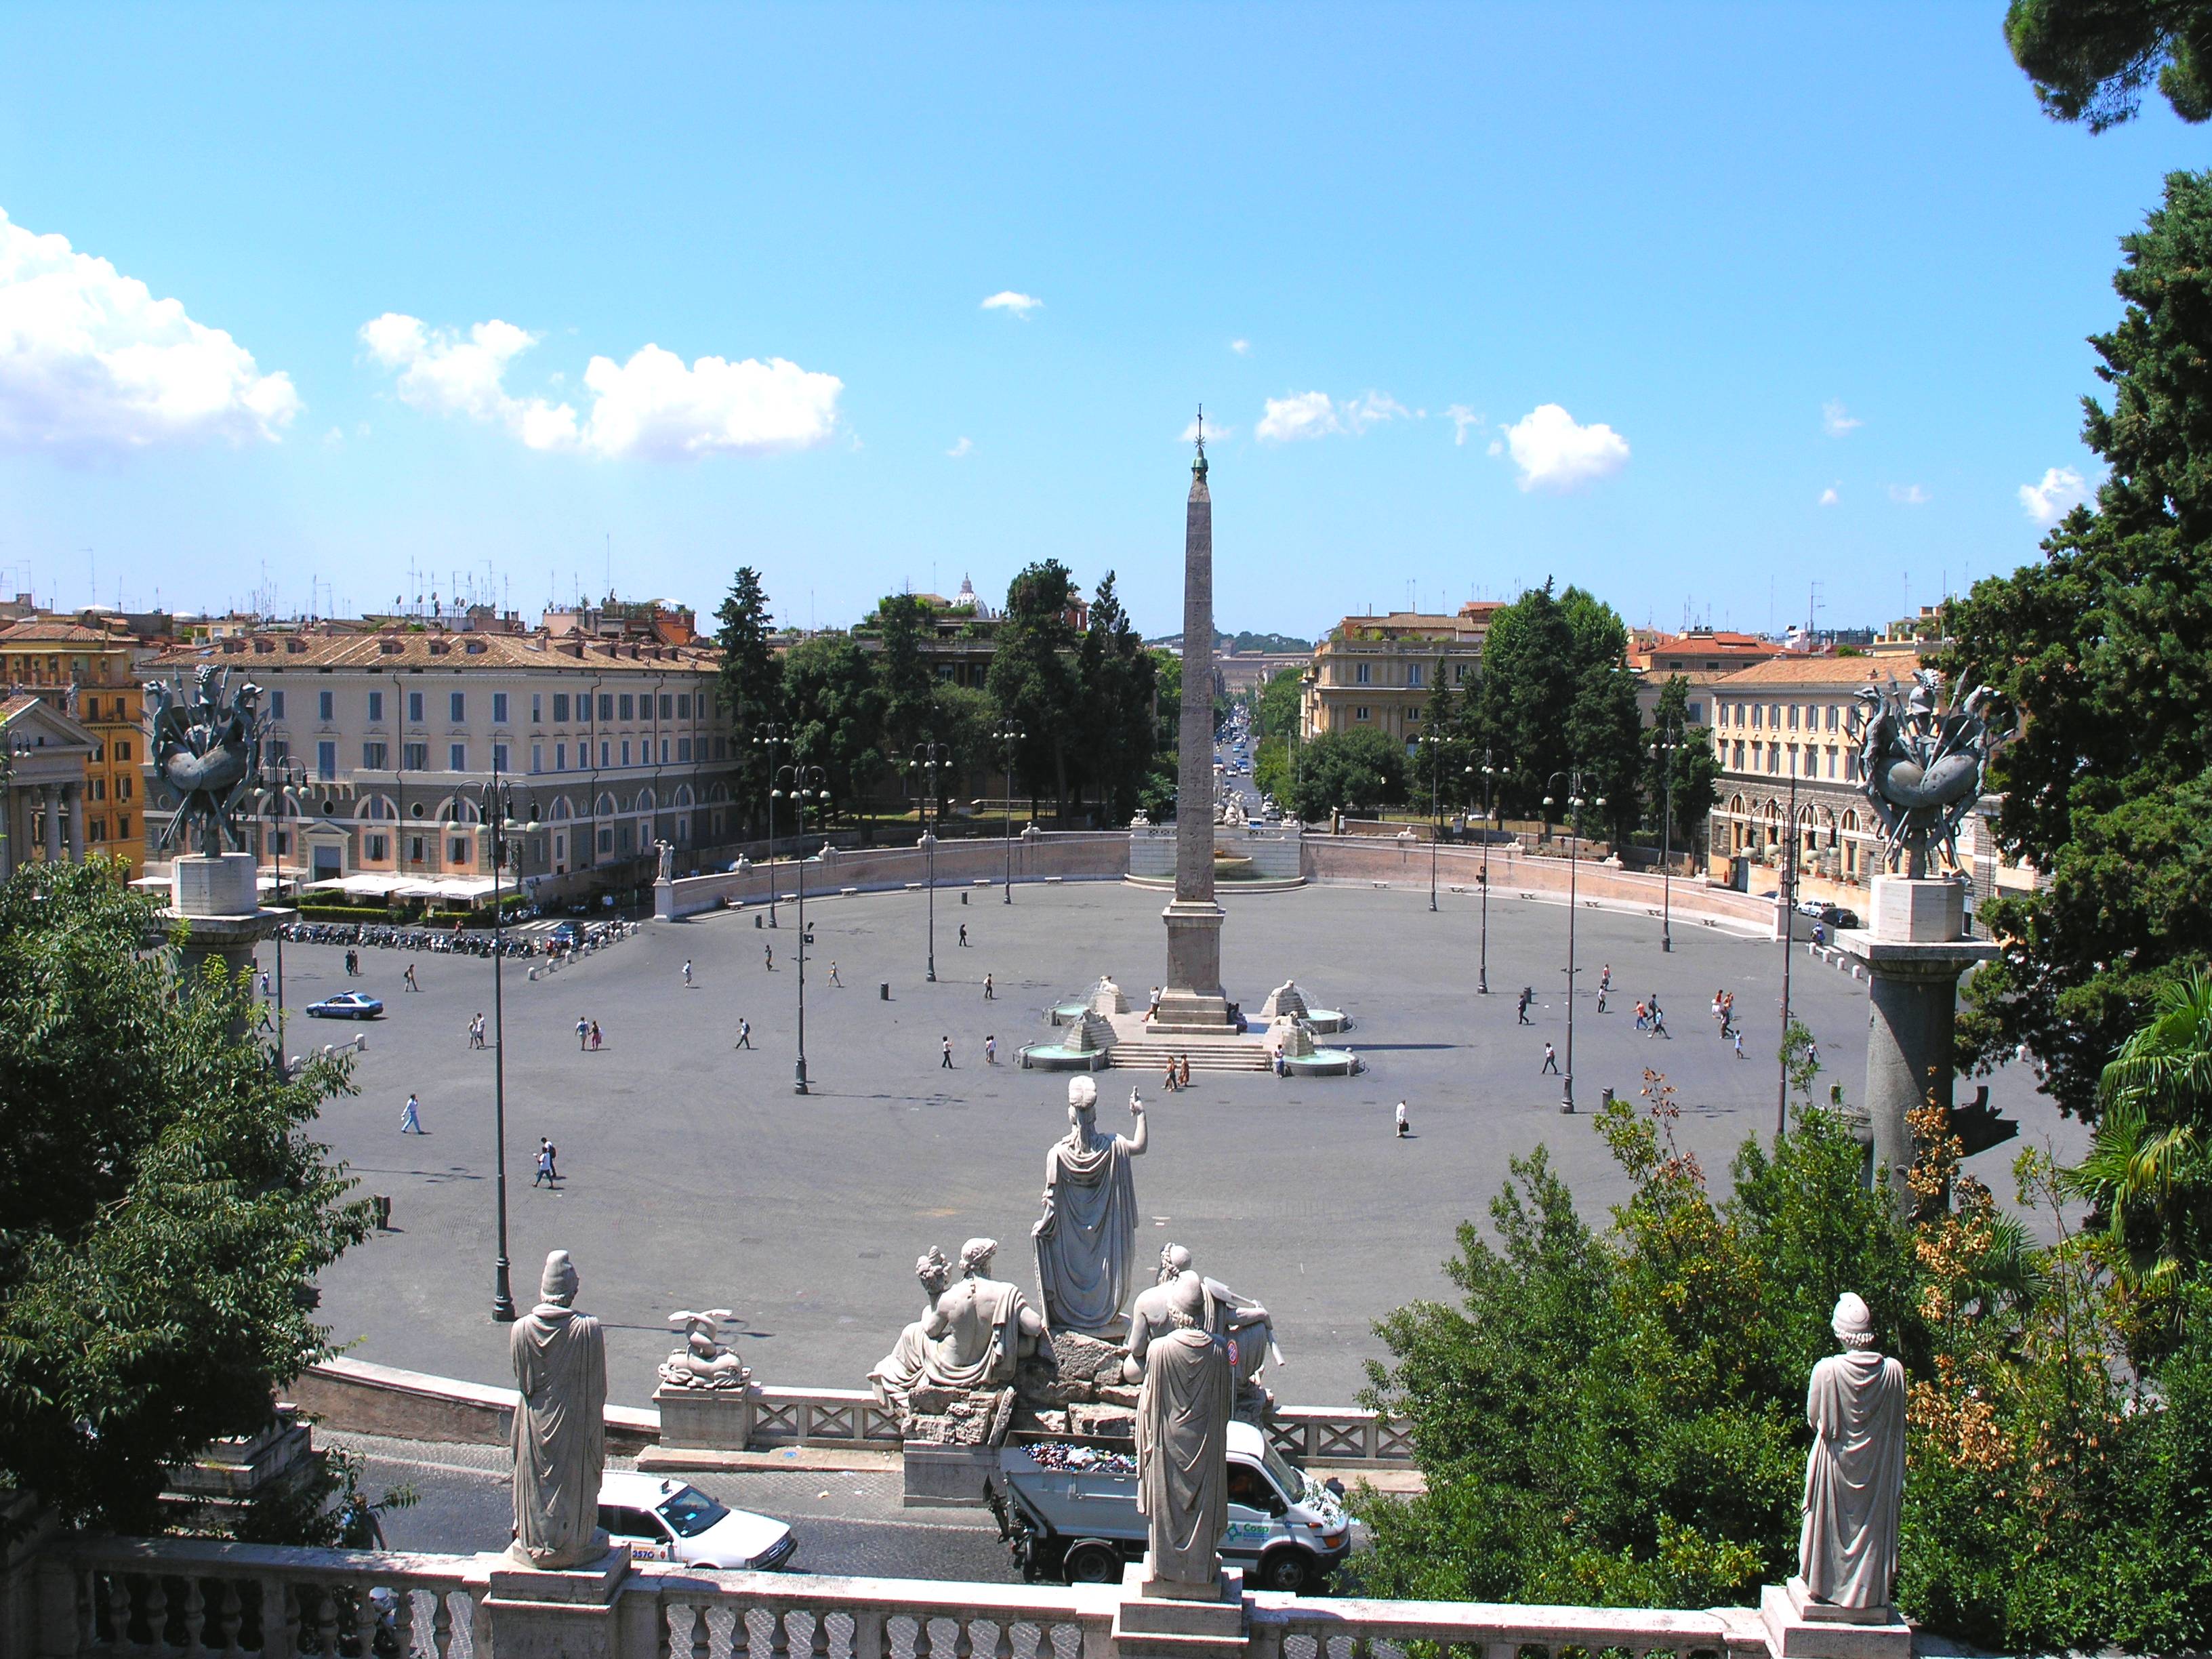 Забронировать онлайн туры в Италию